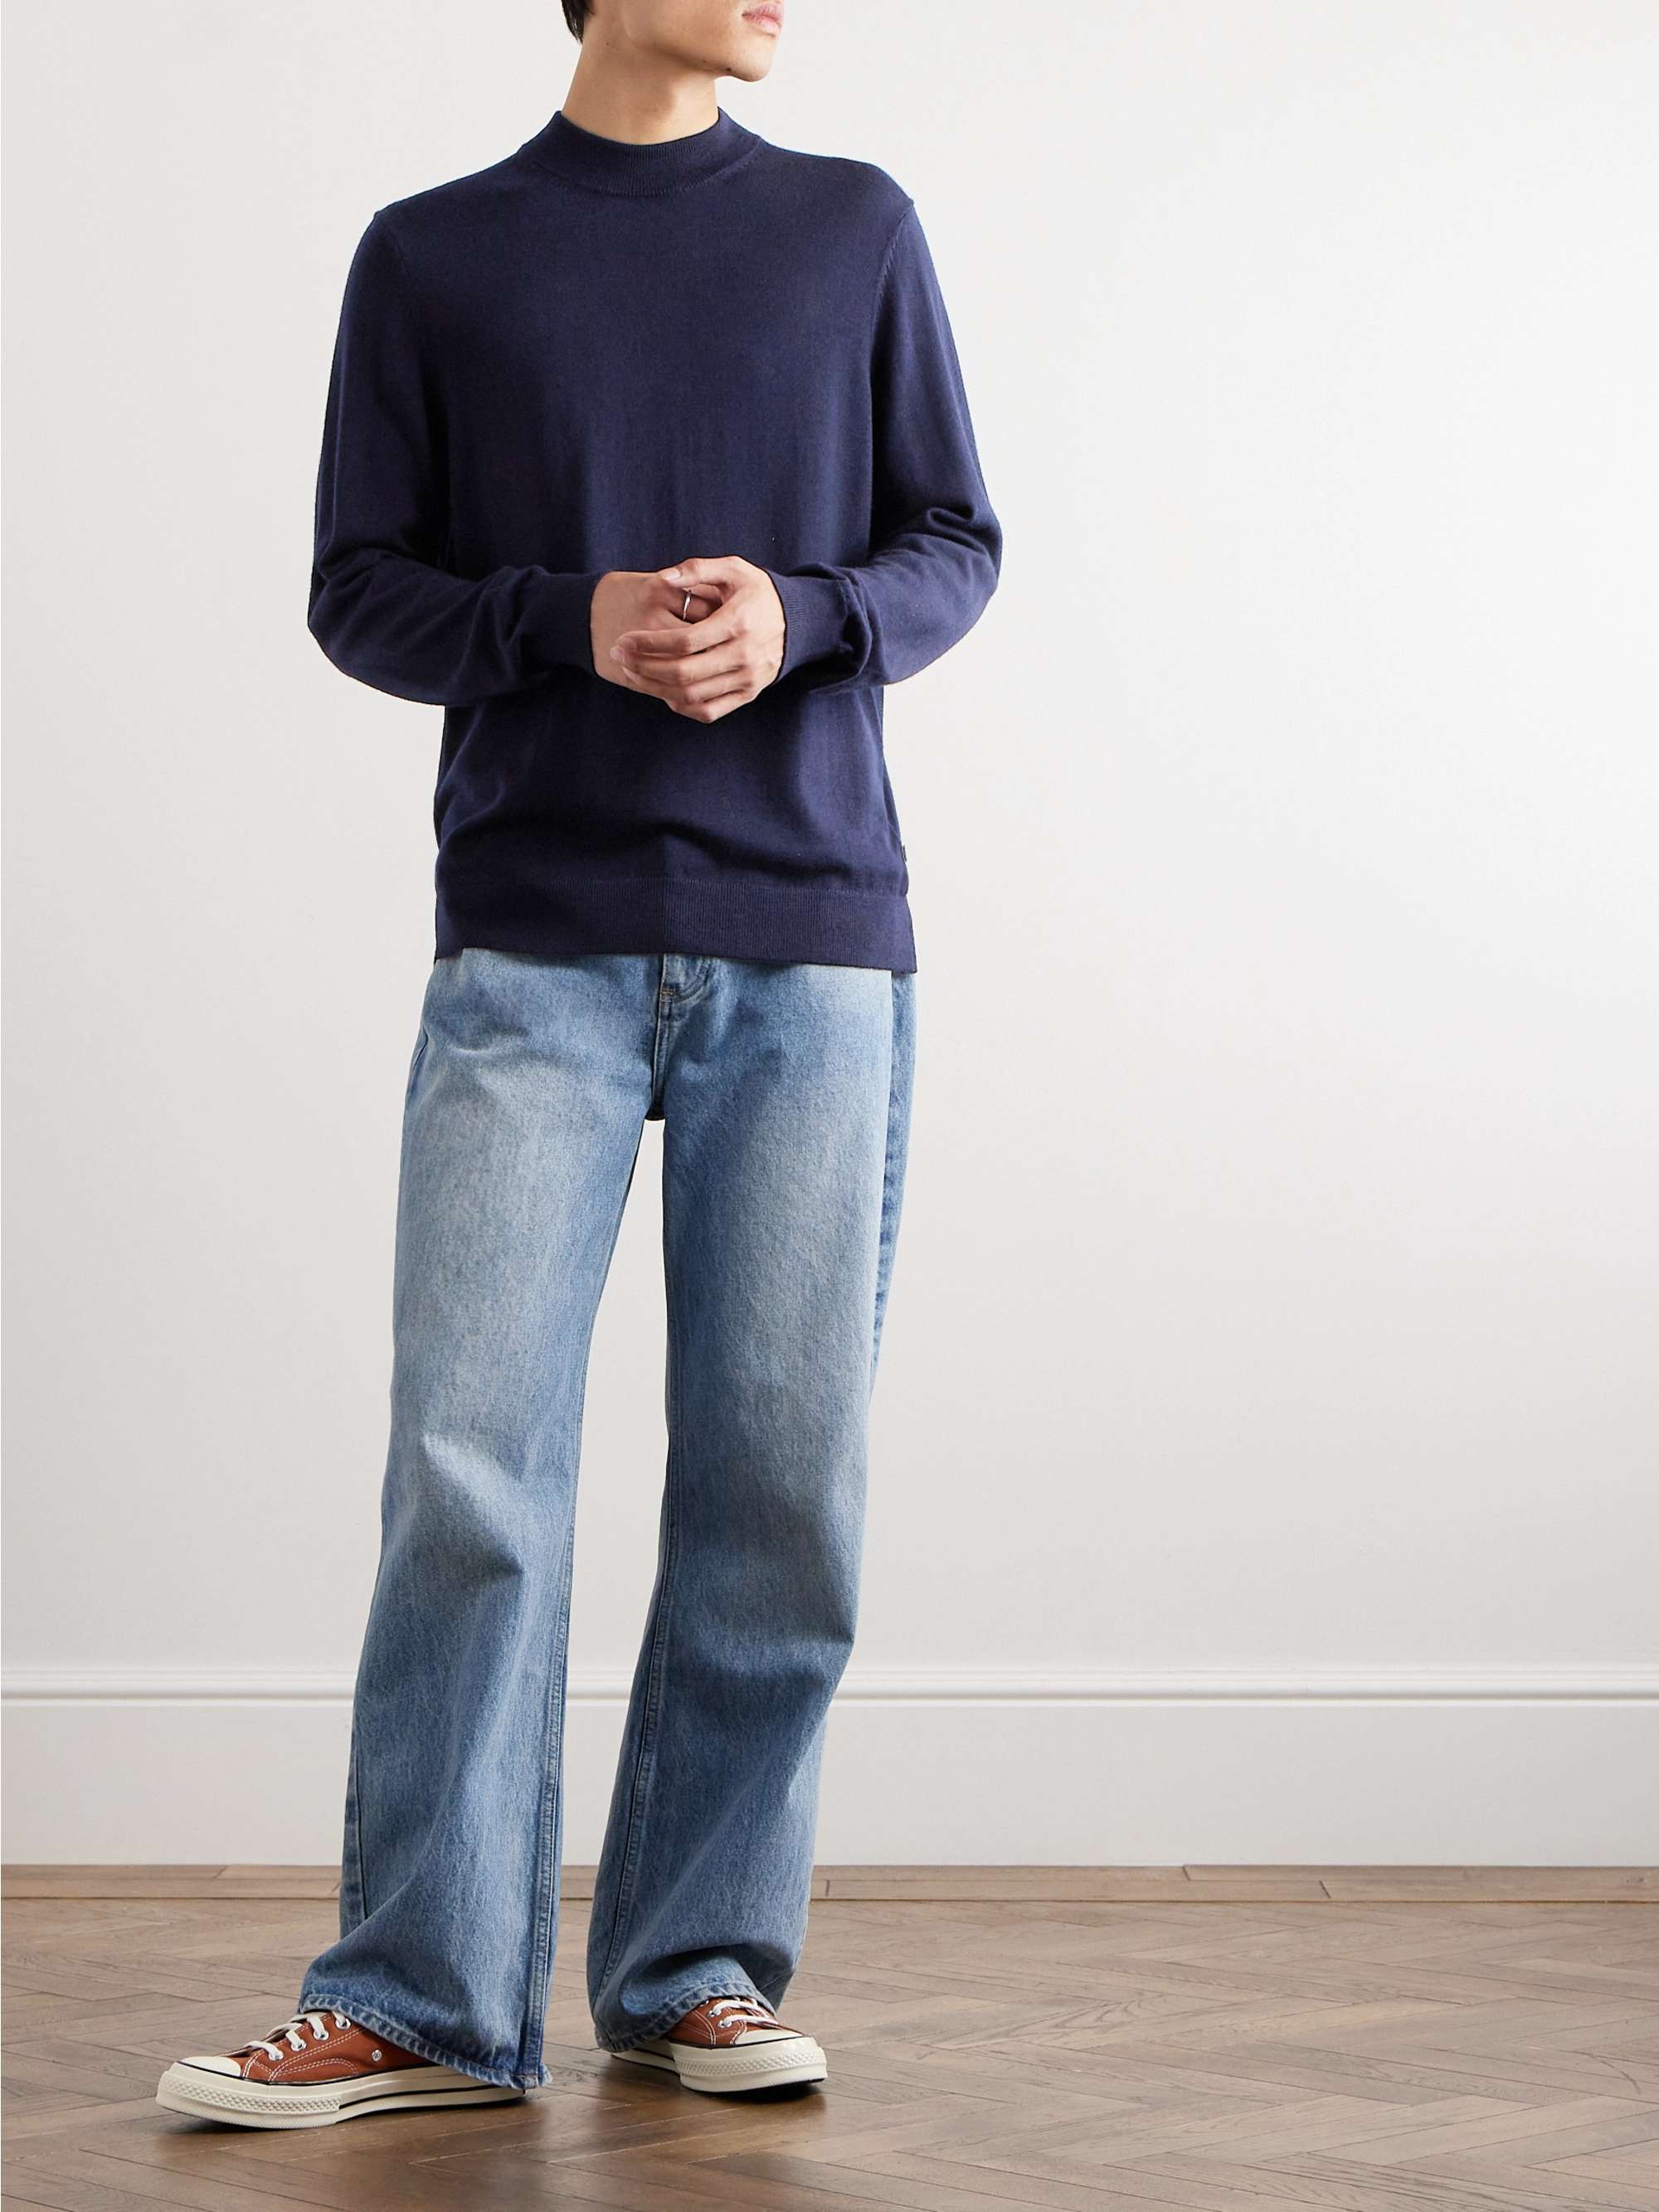 NN07 Martin 6605 Wool Sweater for Men | MR PORTER